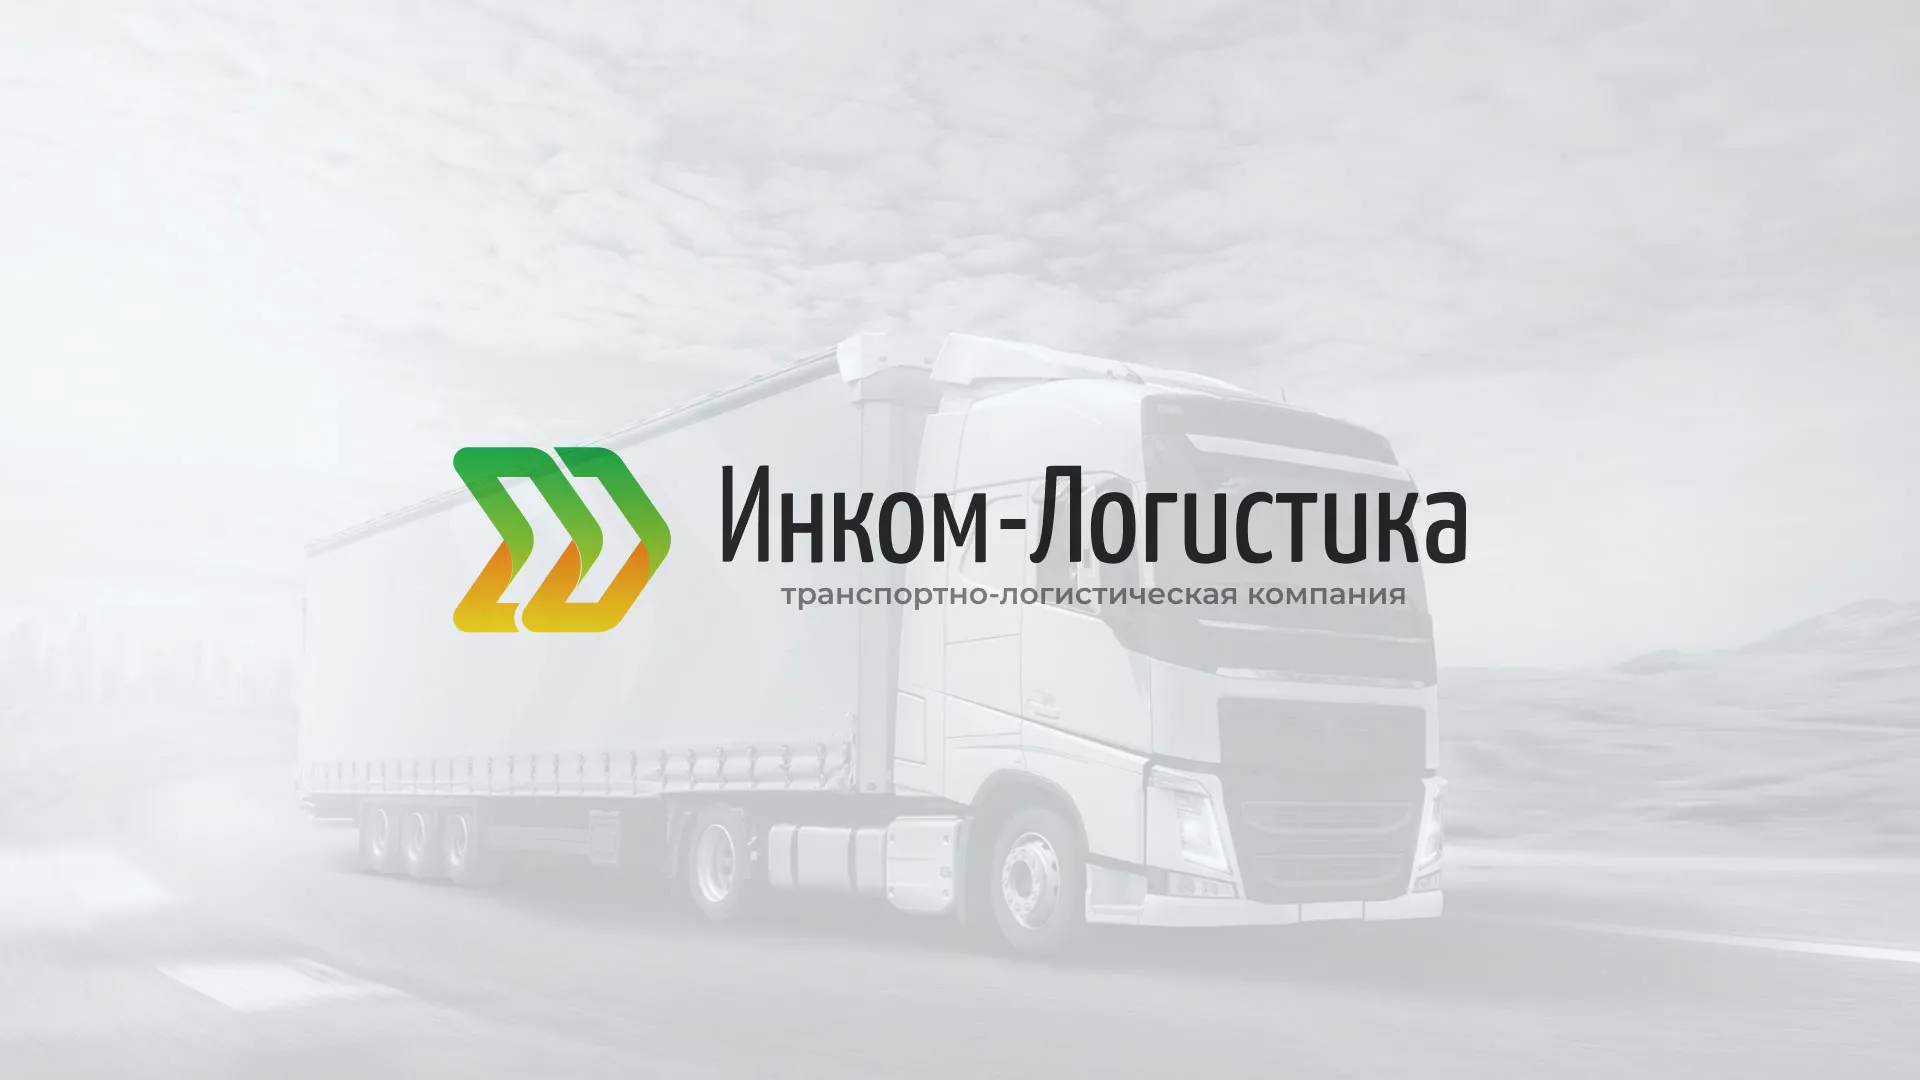 Разработка логотипа и сайта компании «Инком-Логистика» в Усть-Джегуте